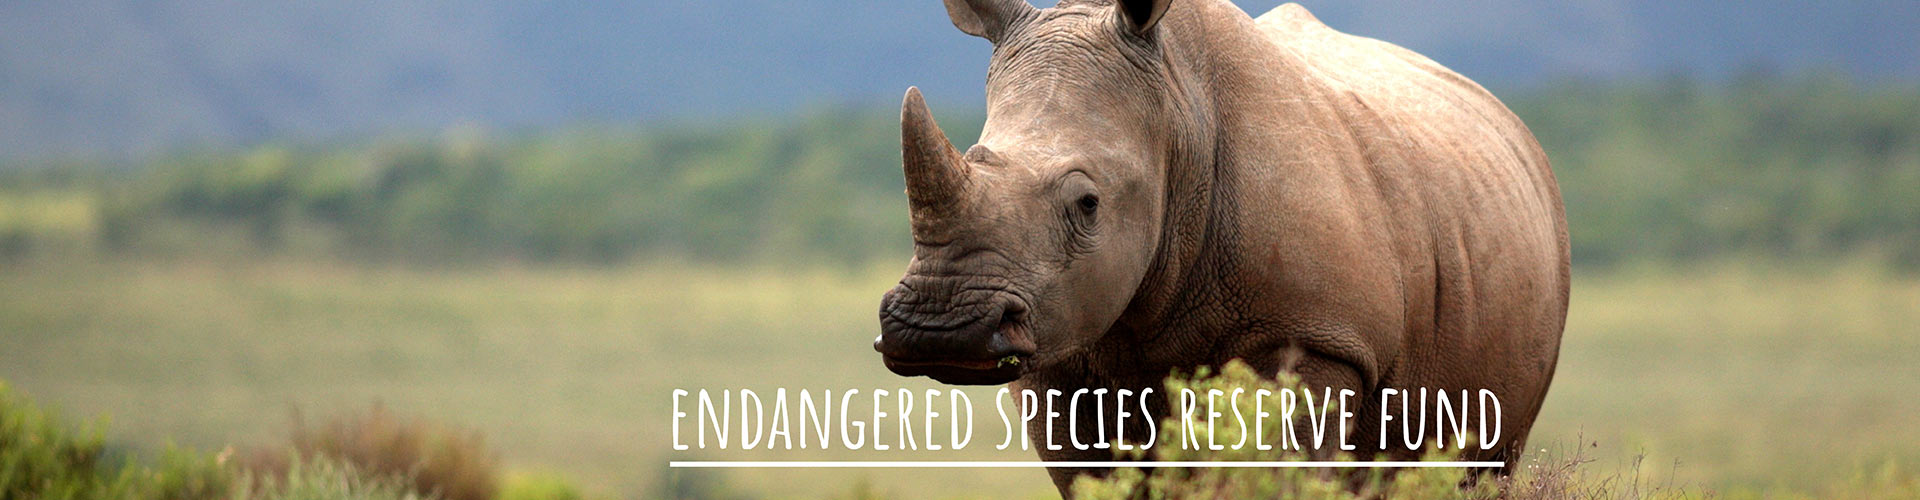 Endangered Species Reserve Fund